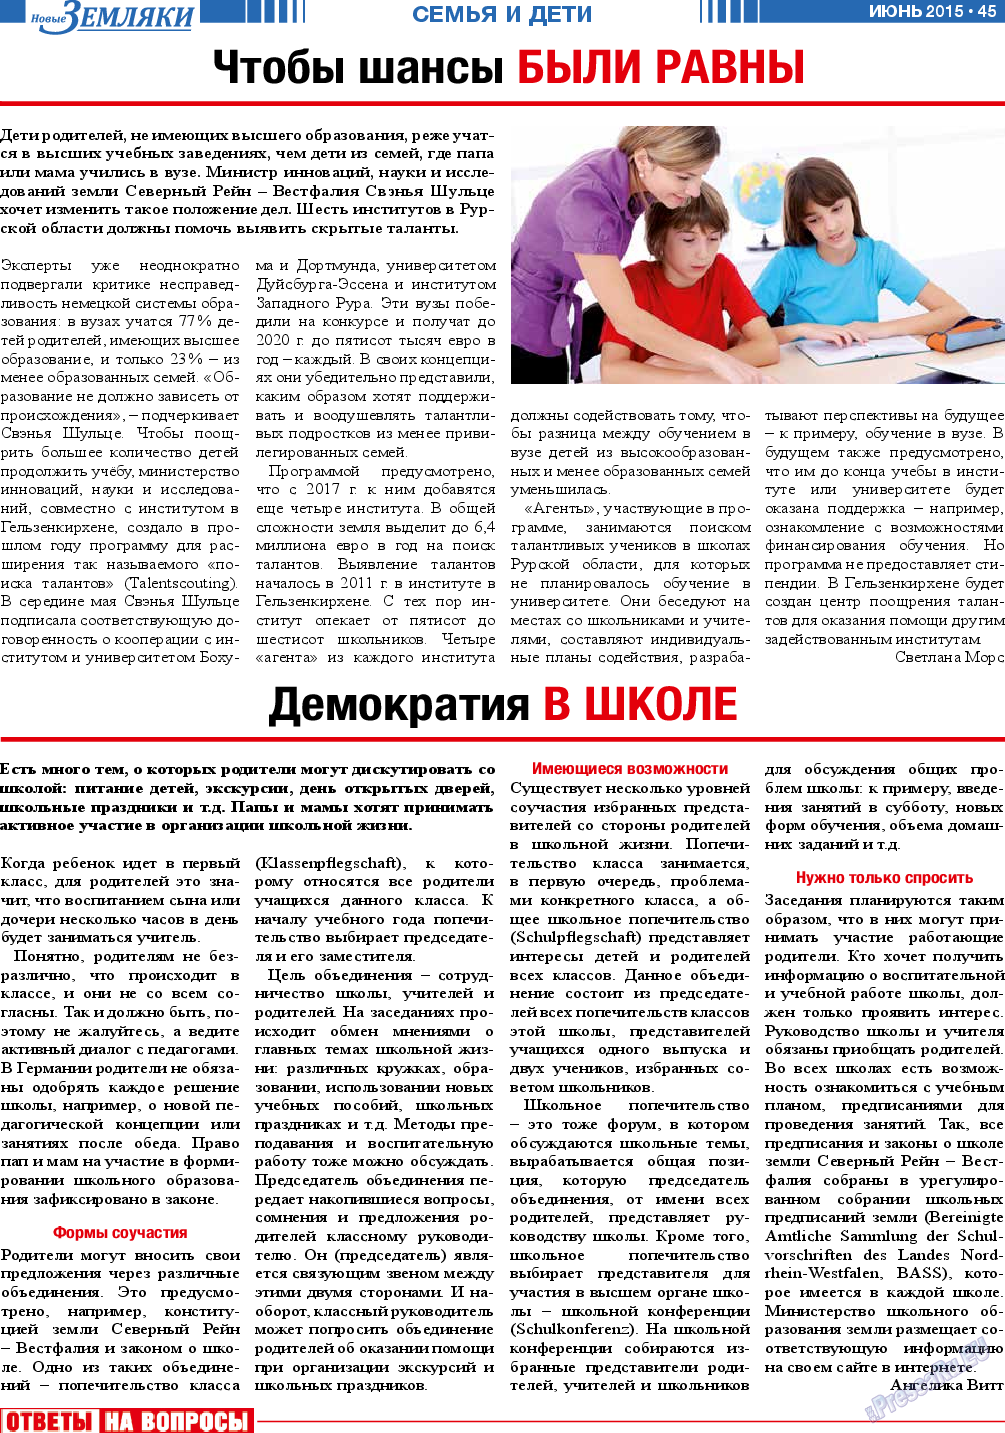 Новые Земляки, газета. 2015 №6 стр.45